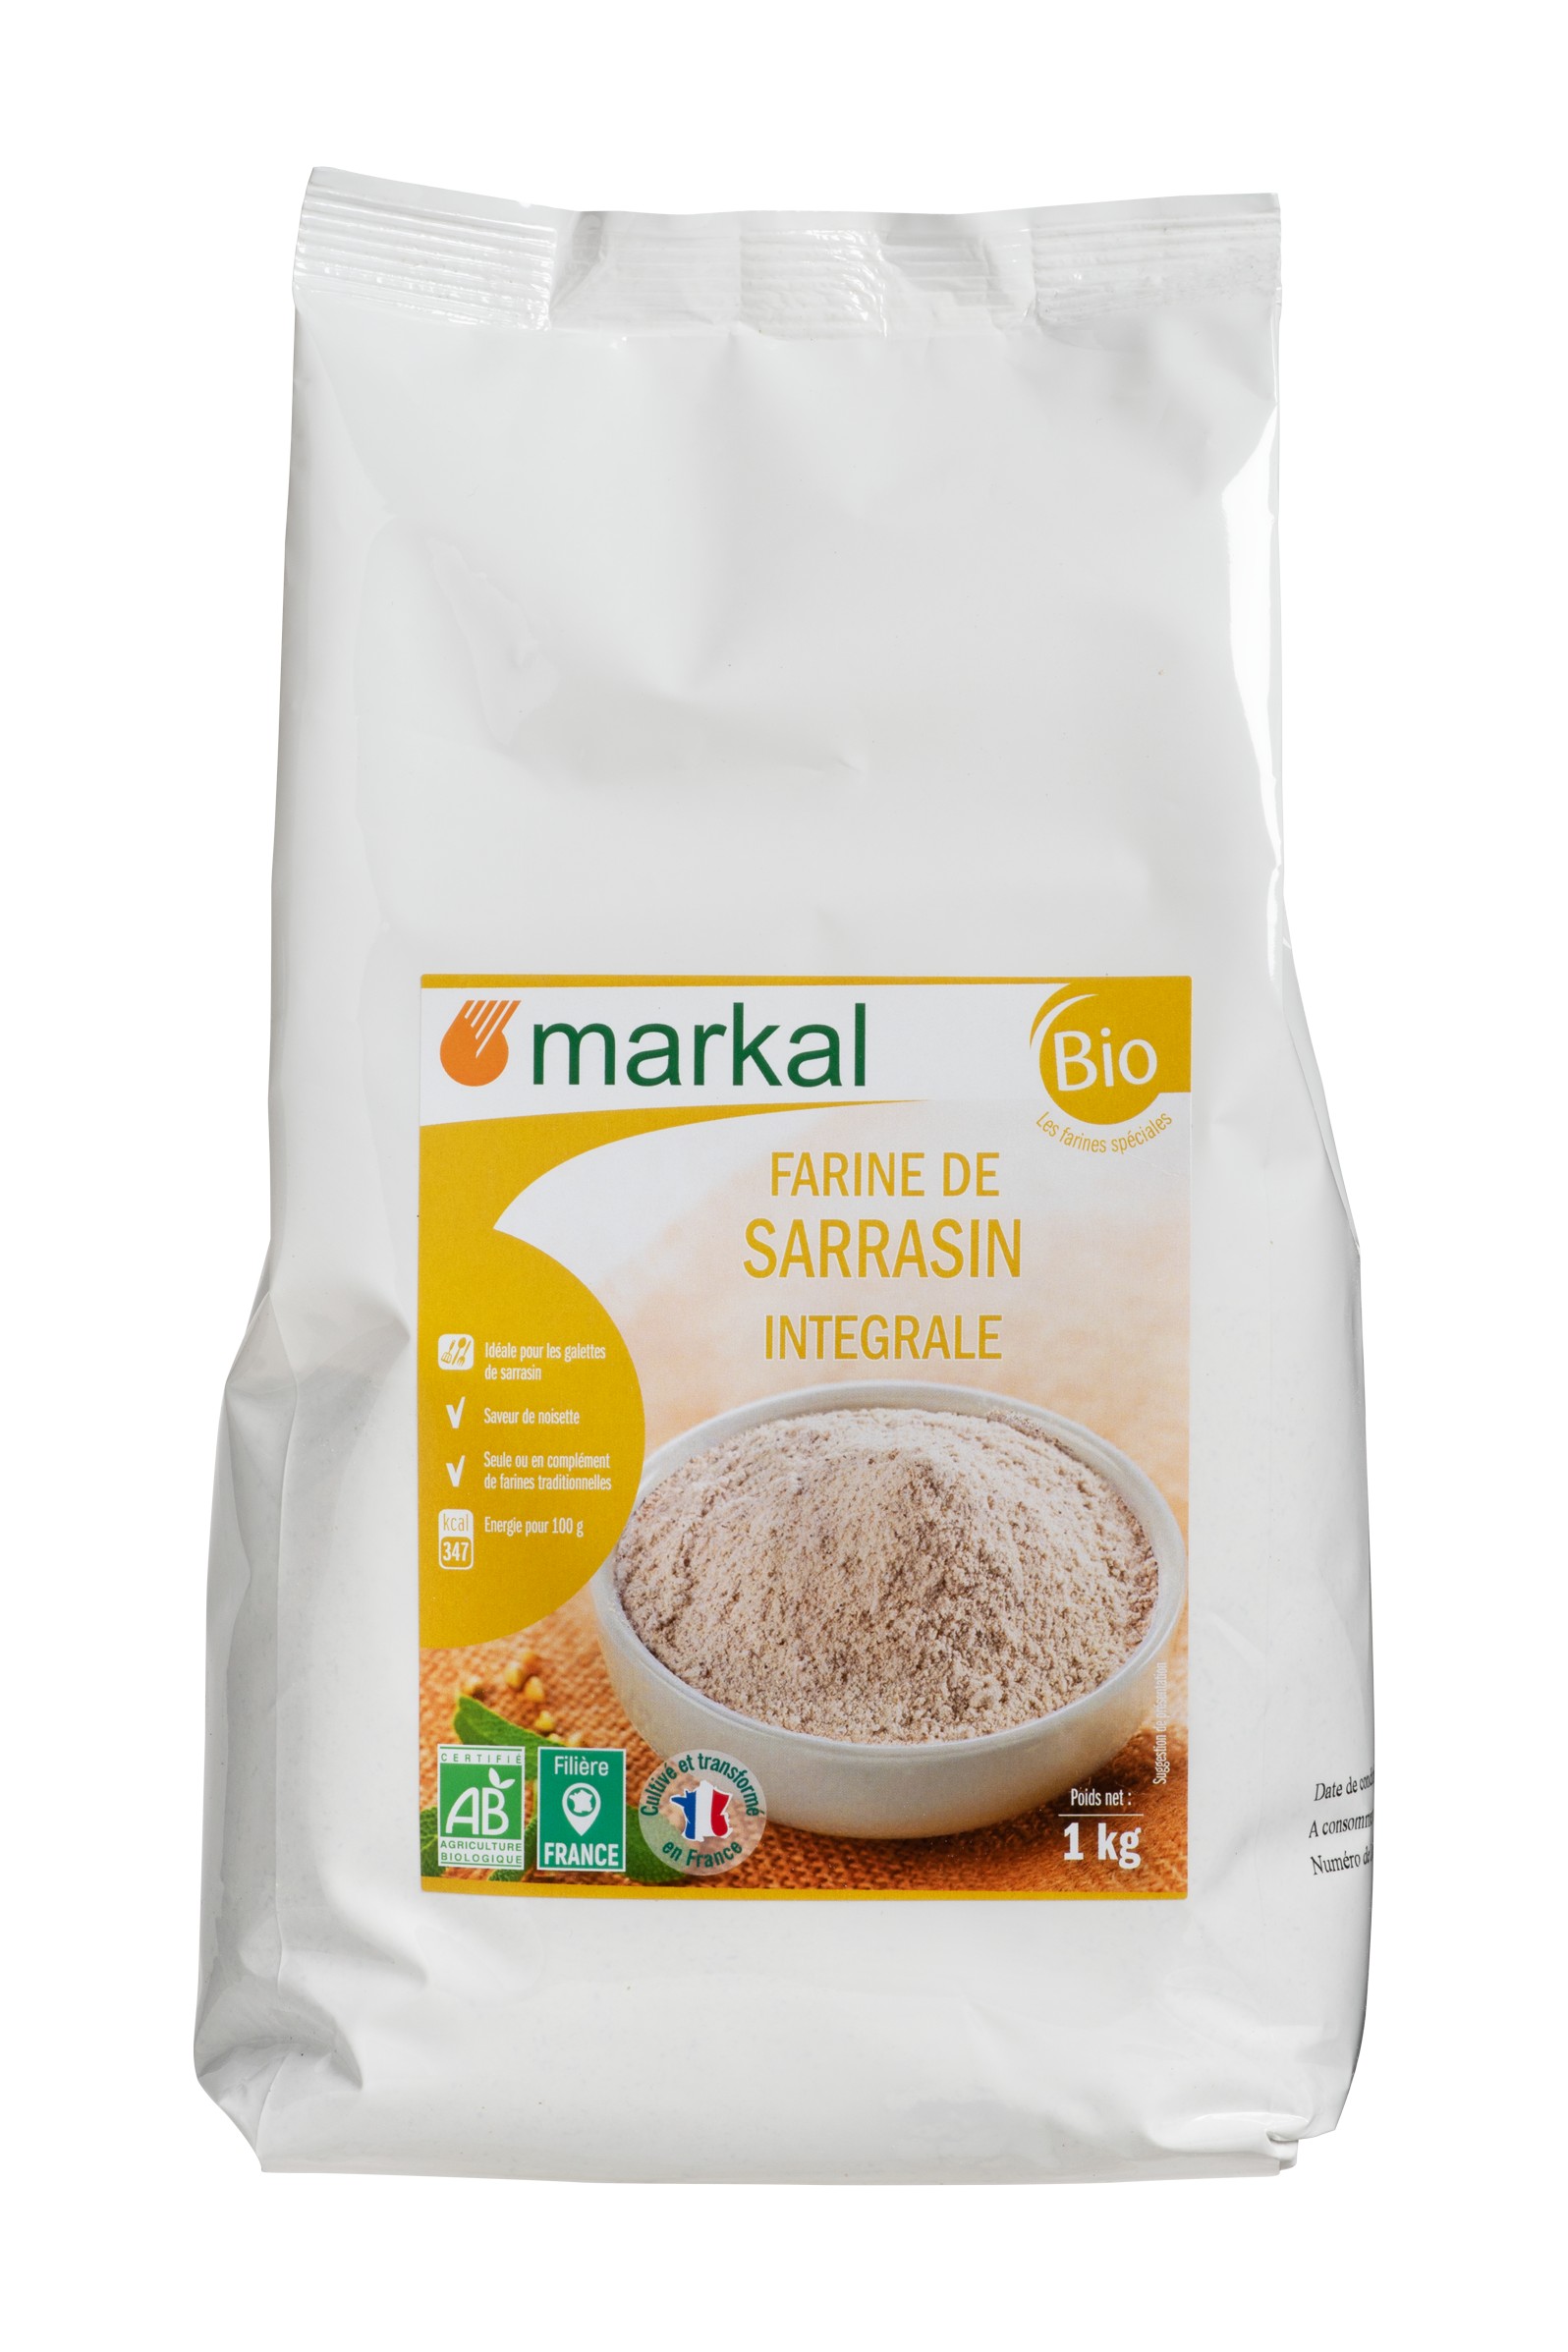 Farine de blé BIO T65, 5kg, vrac BIO, Markal